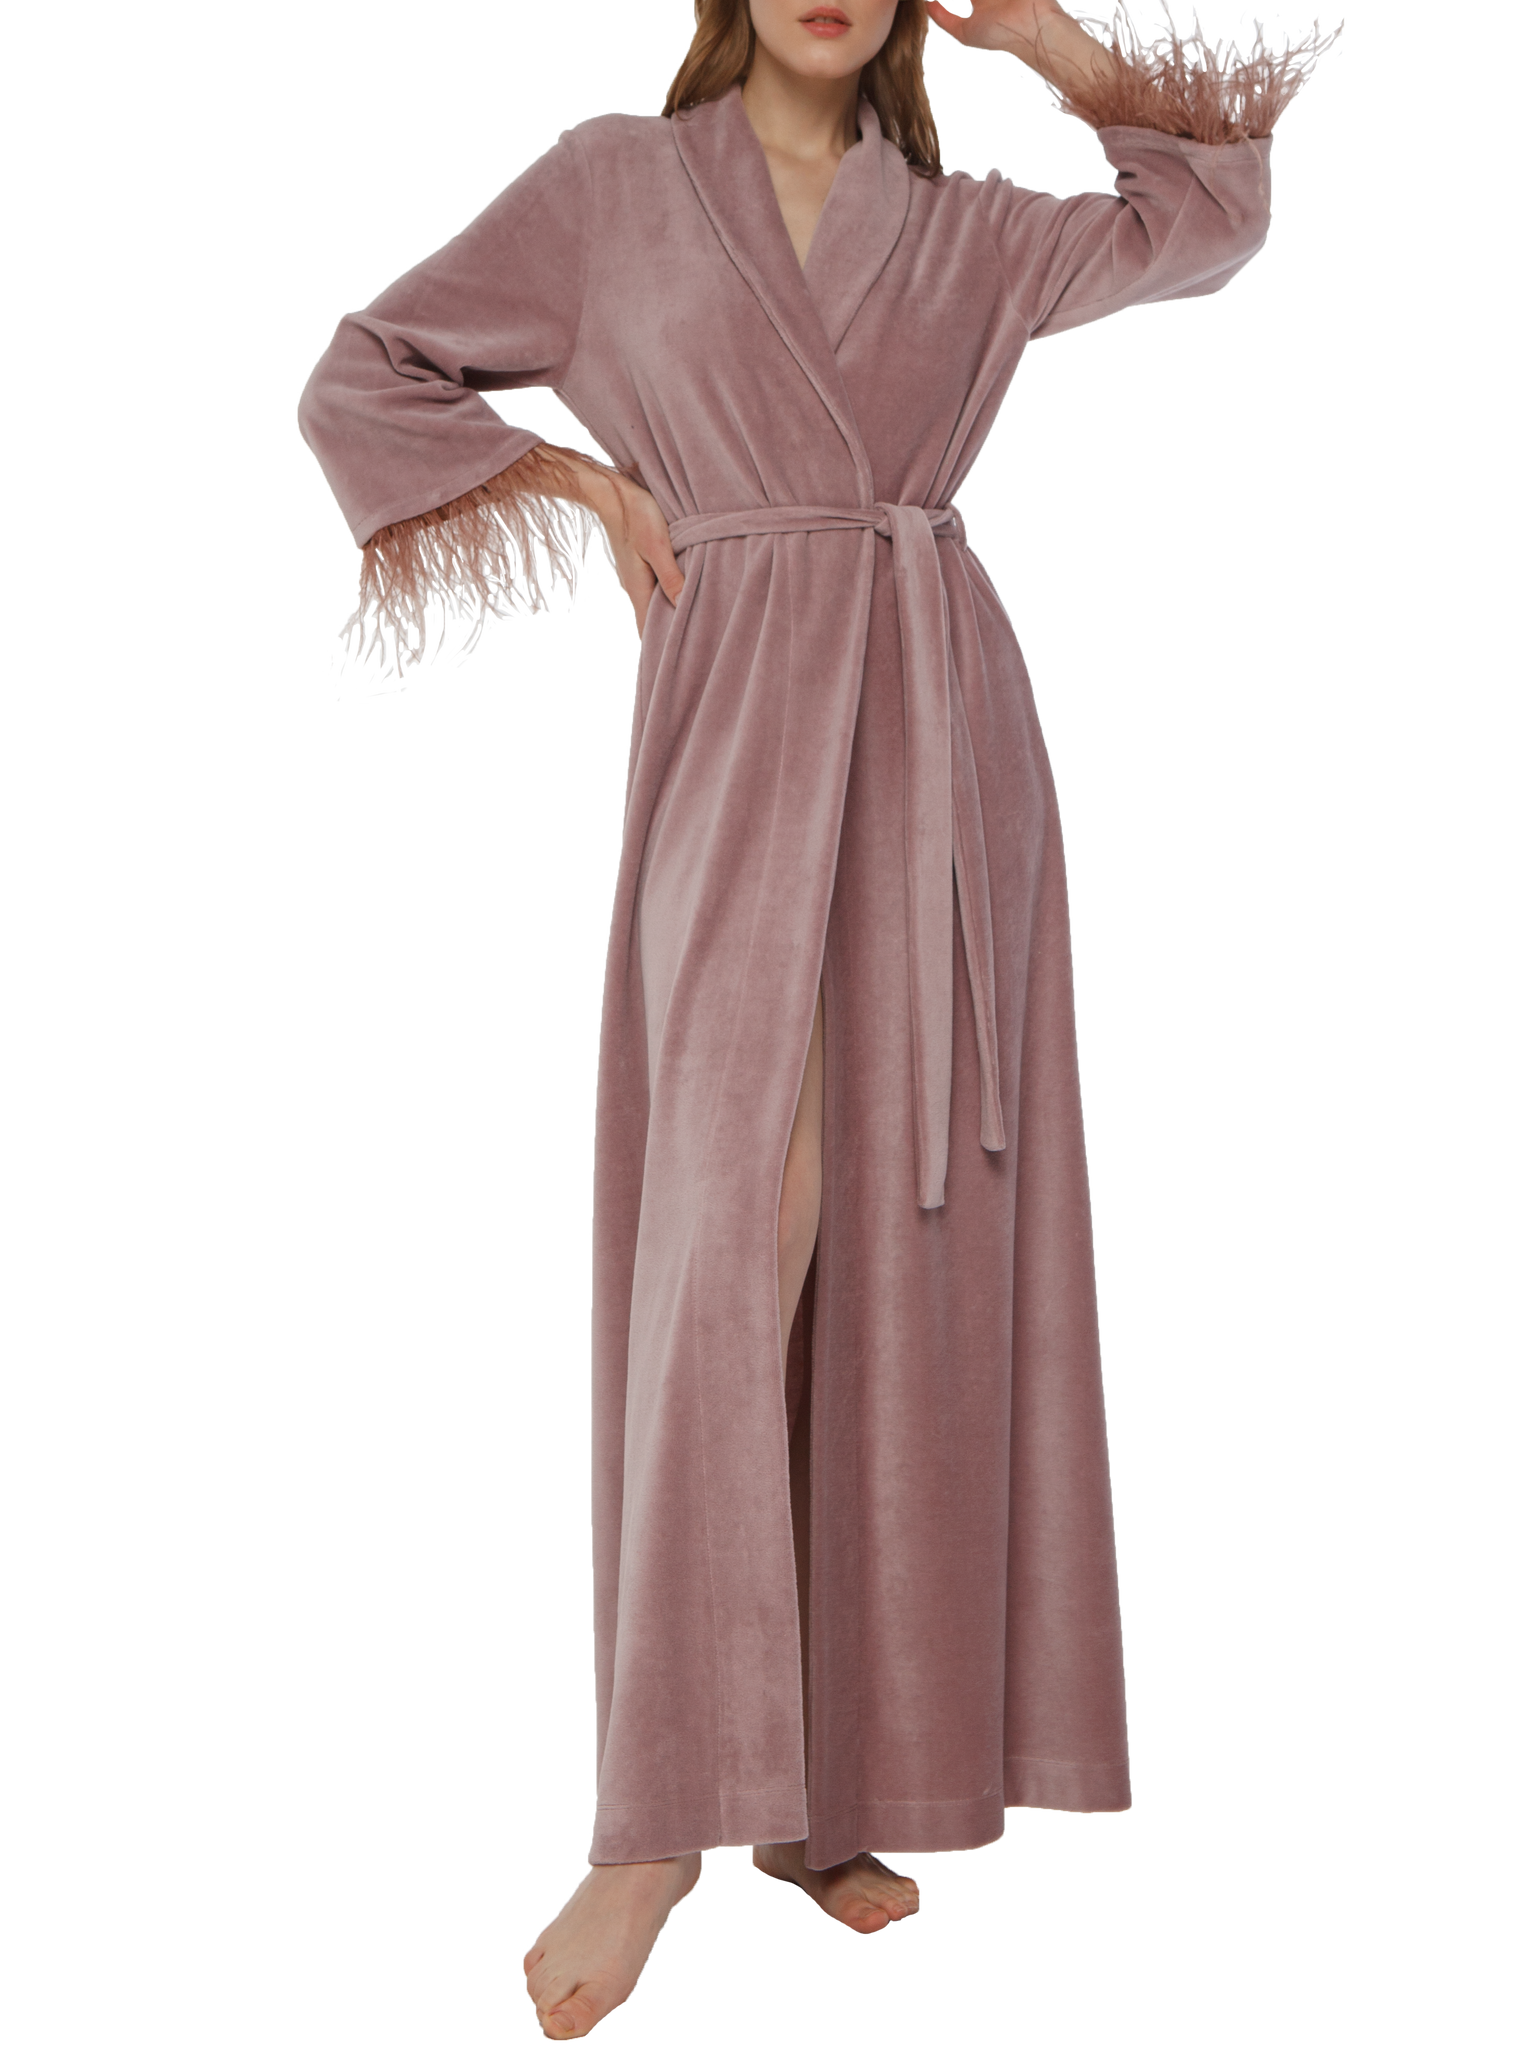 Julie длинный халат велюровый с перьями Limited edition